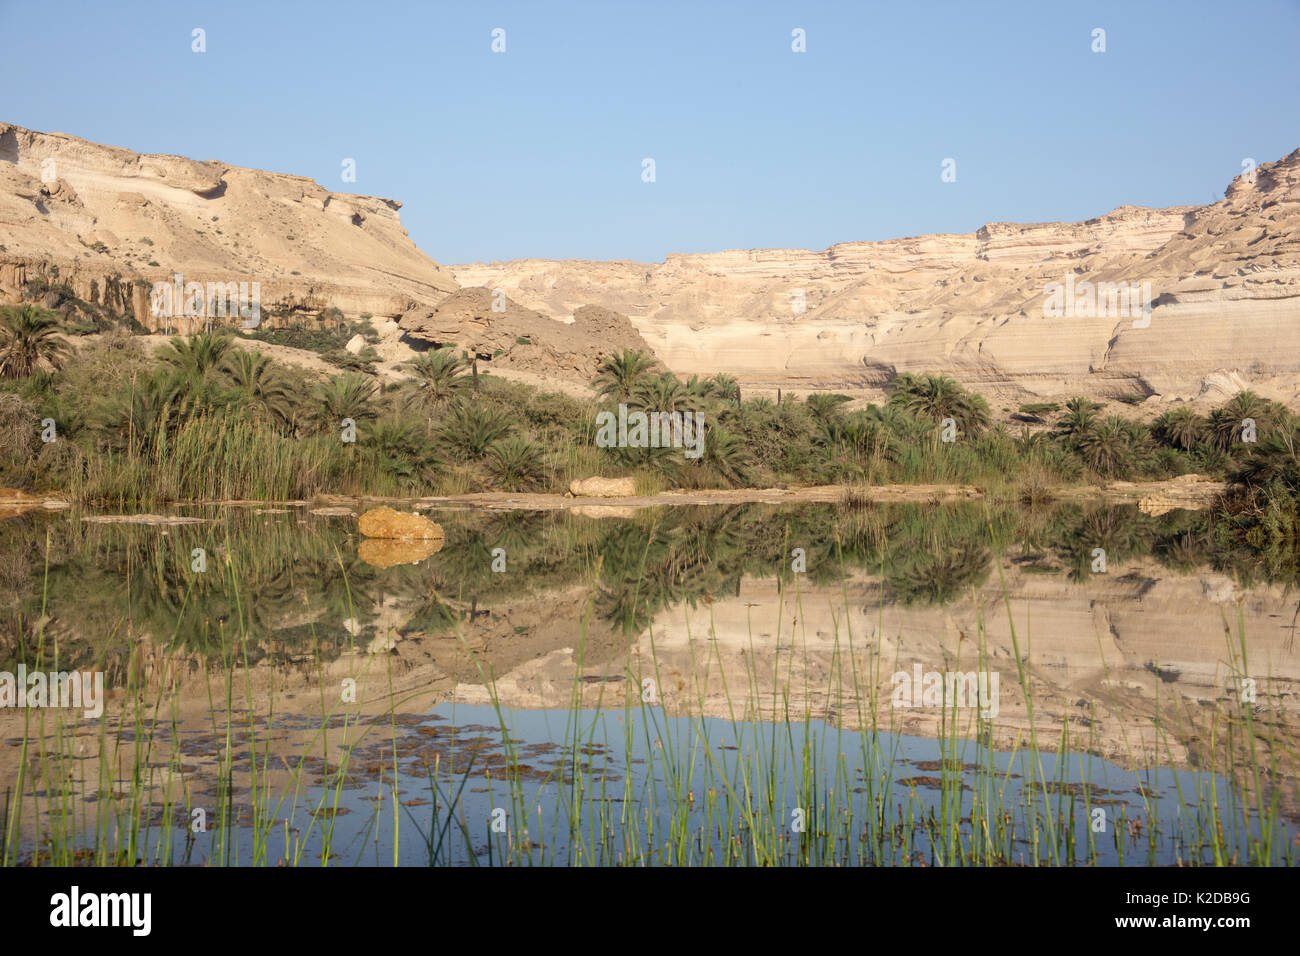 Wadi Shuwaymiyyah, trockene Wadi mit einem Pool, einem beliebten touristischen Ort, Oman, November 2012. Stockfoto